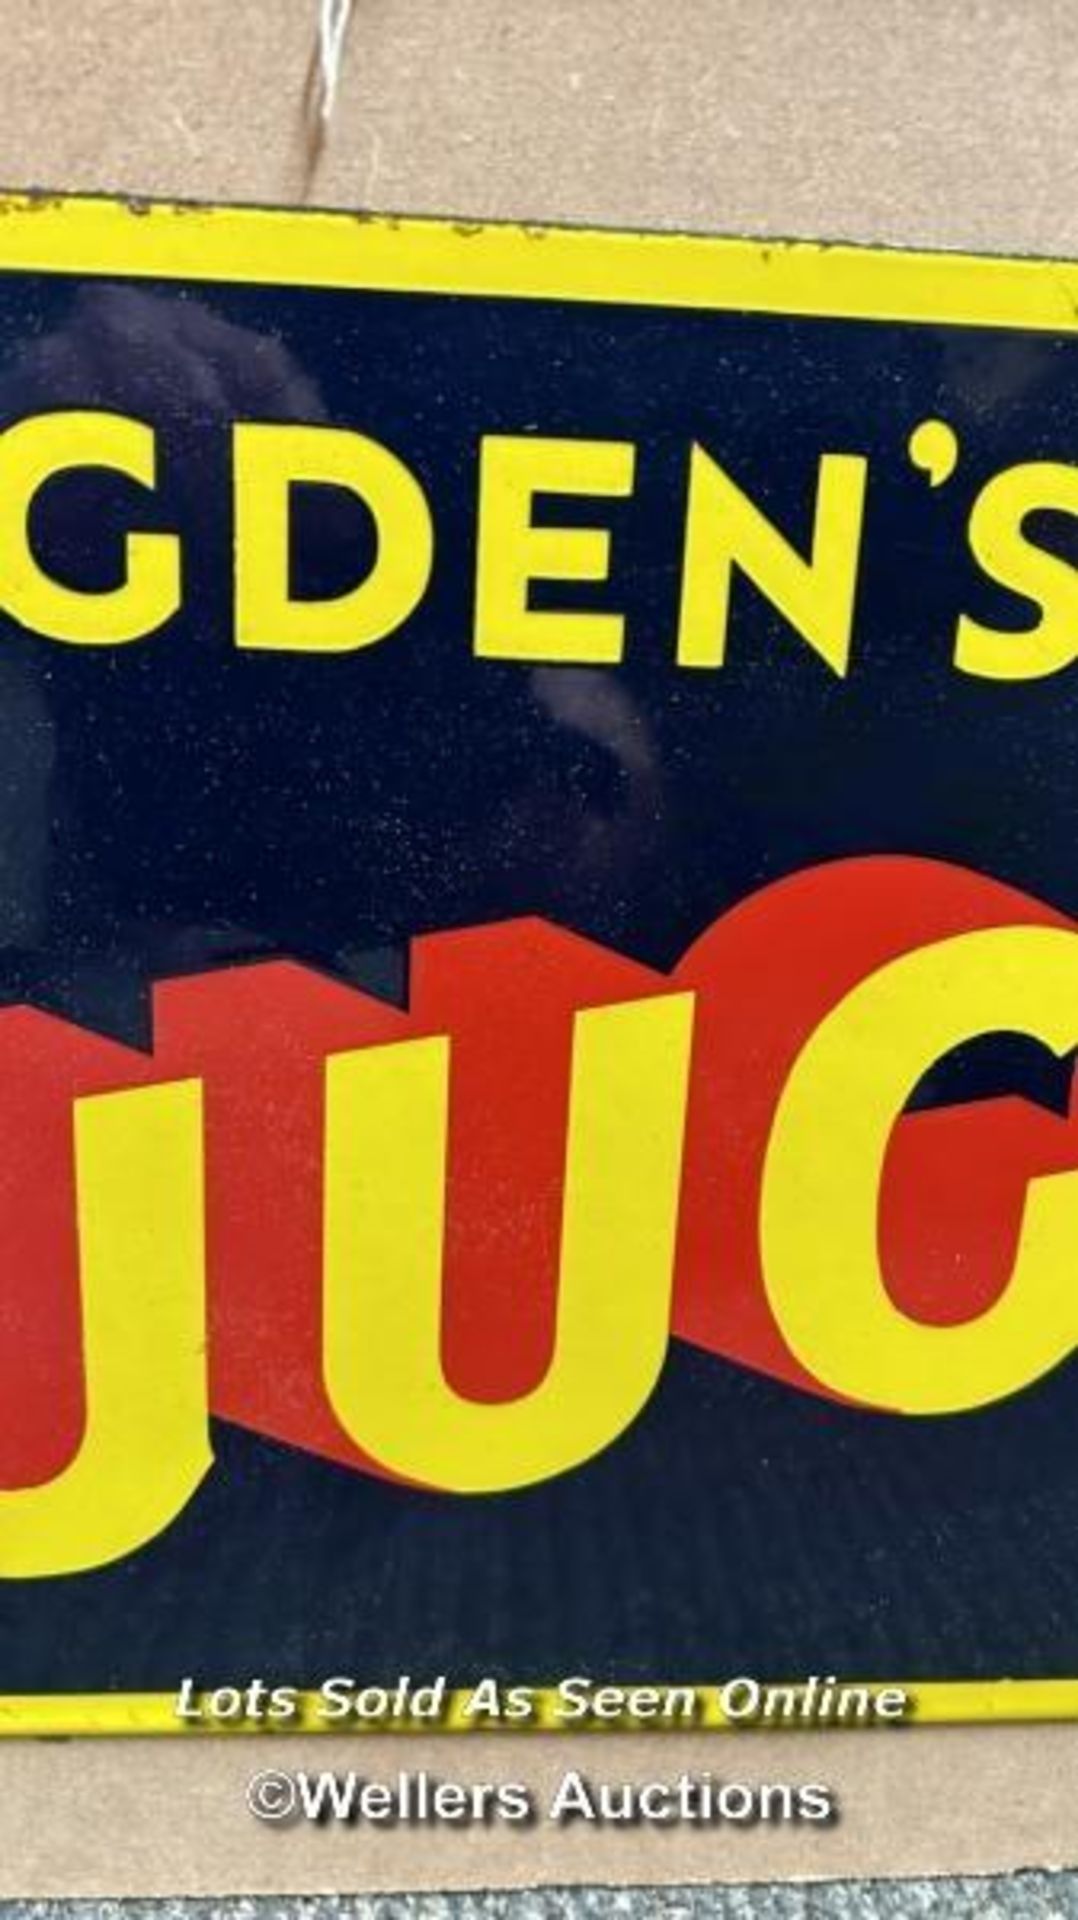 Vintage enamel tobacco sign "OGDEN'S JUGGLER TOBACCO", 56x26cm - Image 3 of 6